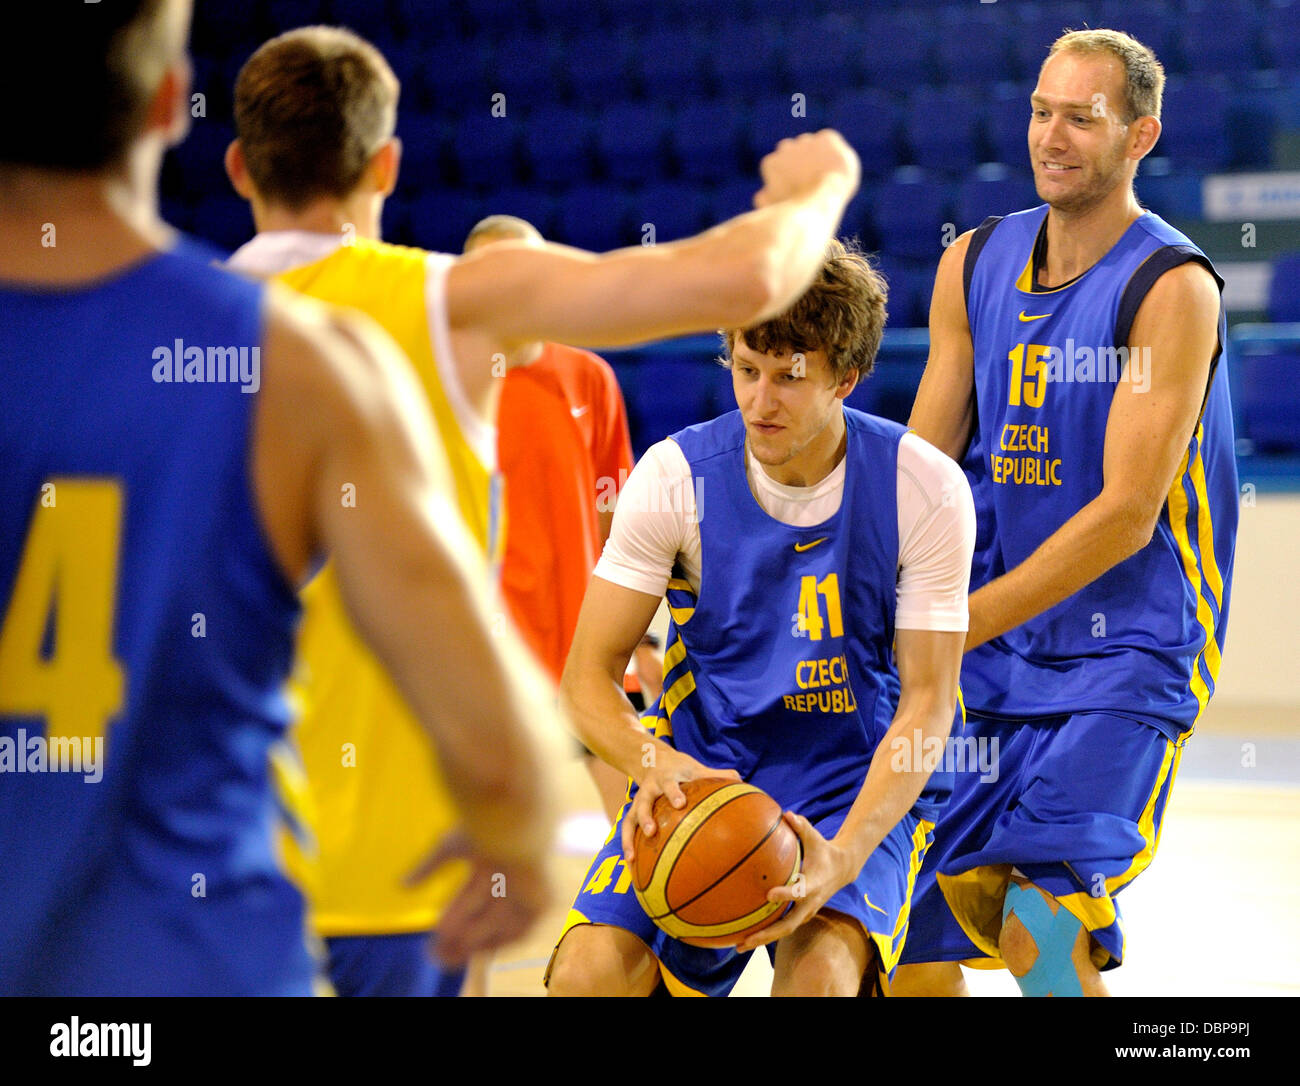 L'équipe nationale de basket-ball tchèque représentée au cours de la formation pour les Championnats d'Europe à Trutnov, République tchèque le 2 août 2013. À partir de la droite : Jakub Houska, Jan Vesely. (CTK Photo/David Tanecek) Banque D'Images